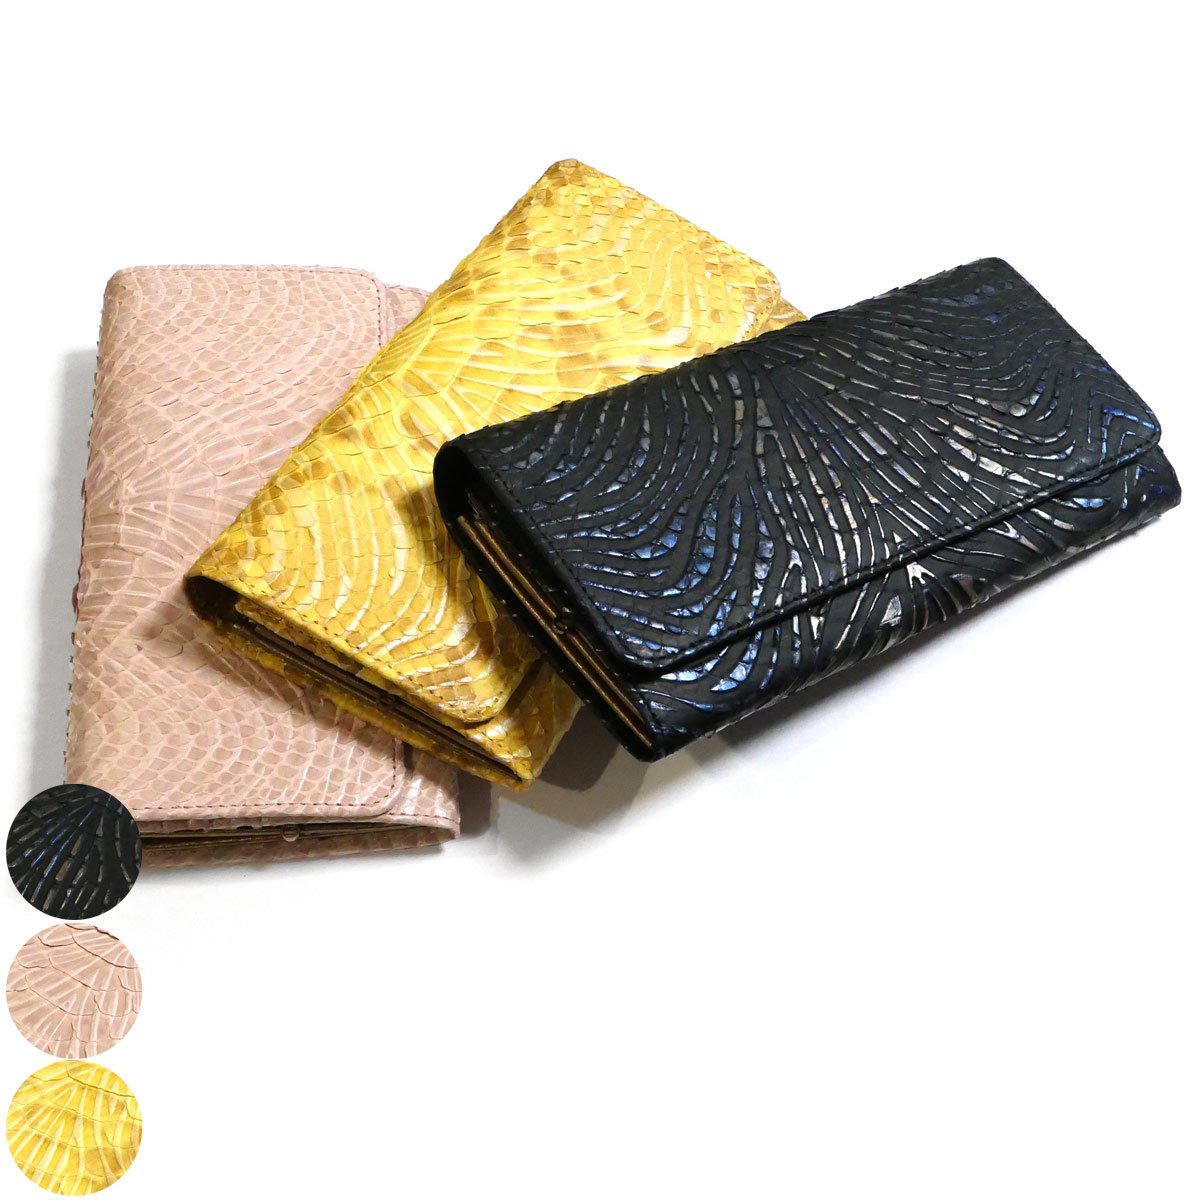 がま口 長財布 かぶせ型 / 本革 パイソン革 ダイヤモンドパイソン ウェーブ柄 全３色 / ブラック・ピンク・イエロー